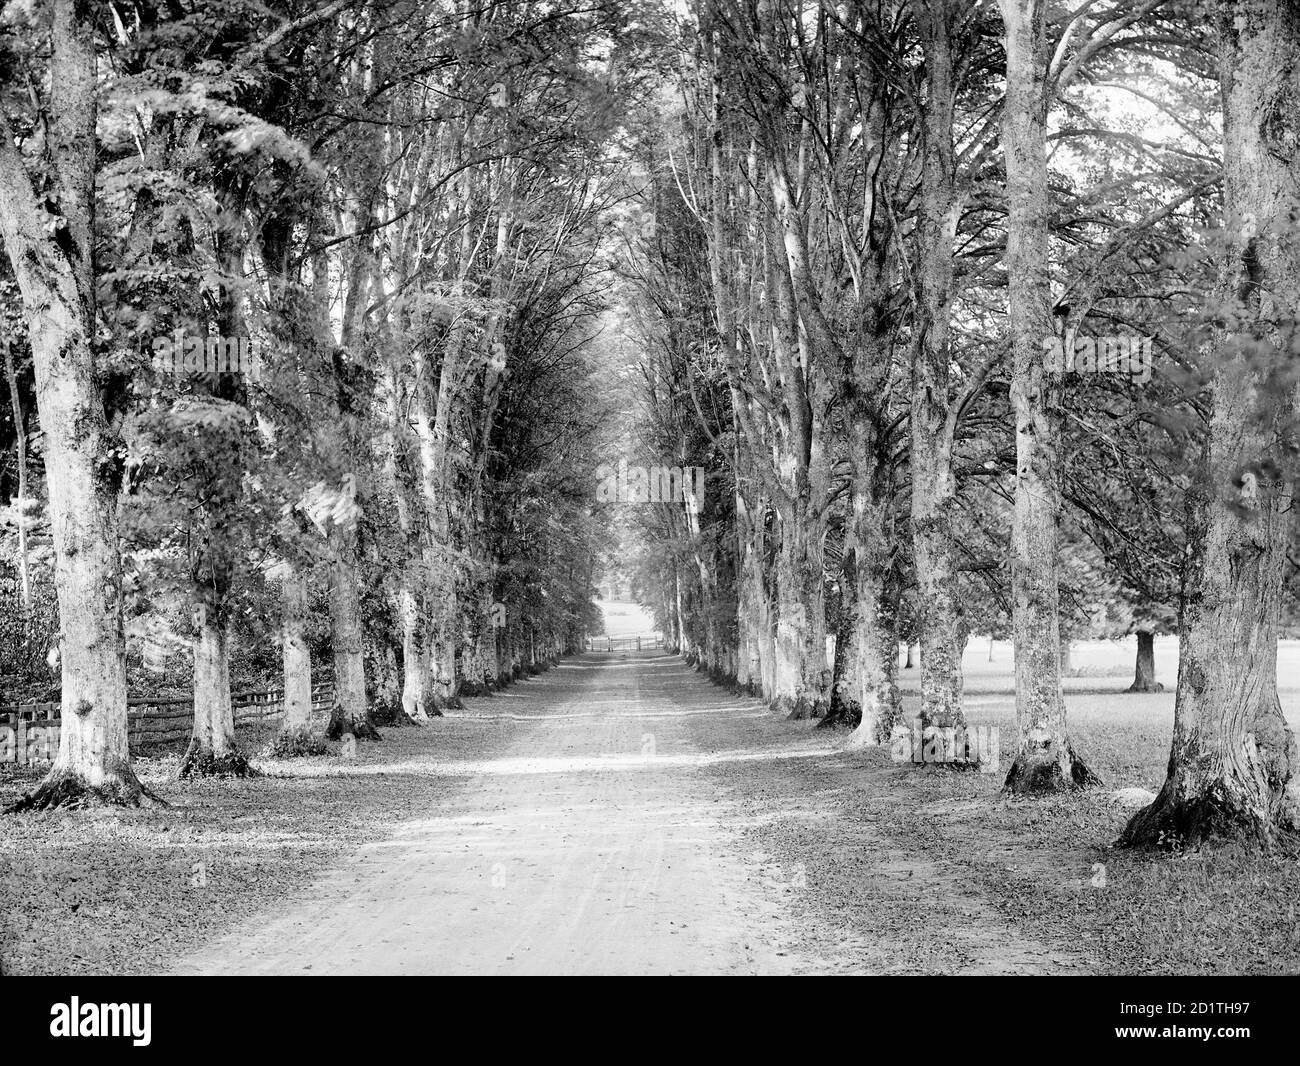 HIGHCLERE CASTLE, Hampshire. Blick auf die Dames Avenue in Richtung eines Tores im Park. Fotografiert von Henry Taunt (aktiv 1860 - 1922). Stockfoto